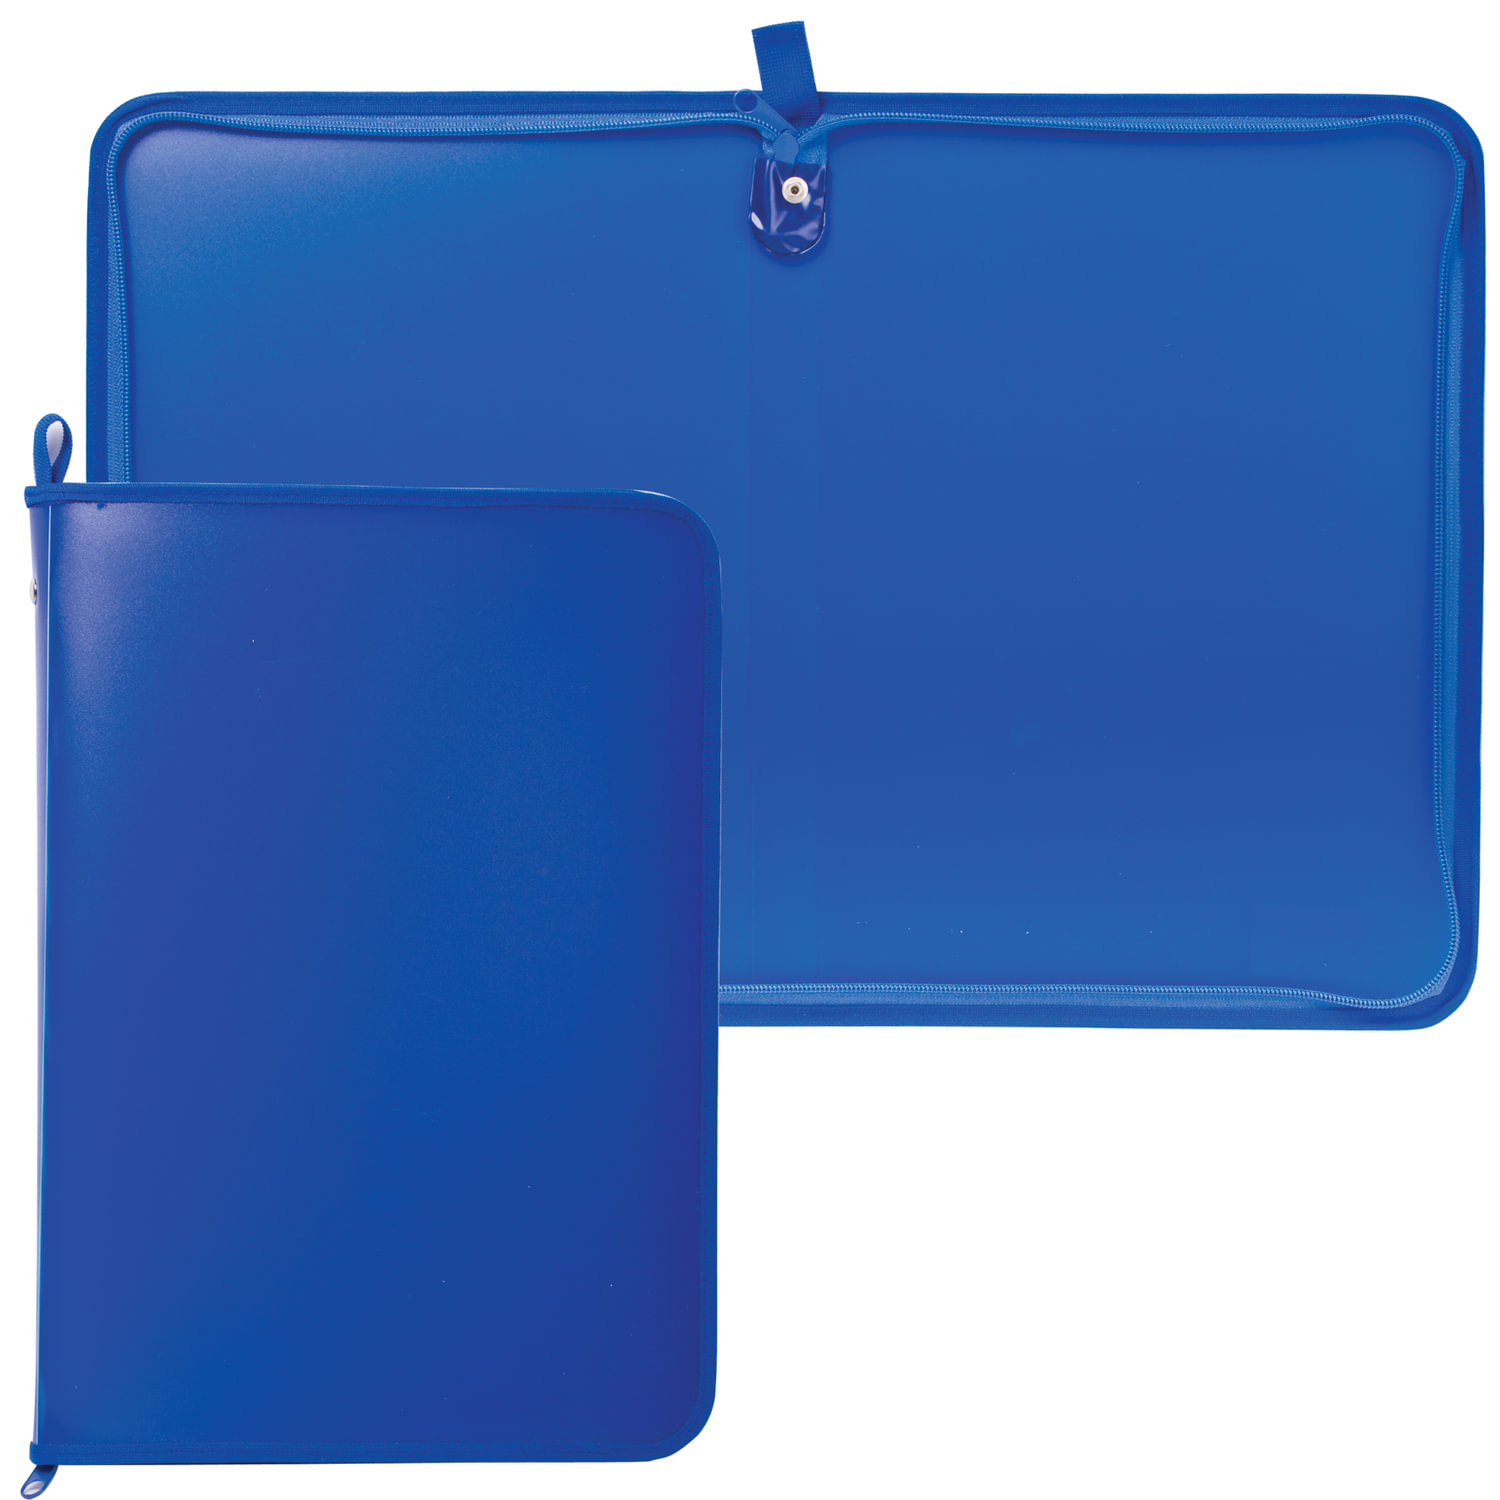 Папка на молнии пластиковая, А4, матовая, синяя, размер 320х230 мм, ПМ-А4-11/3, (5 шт.)